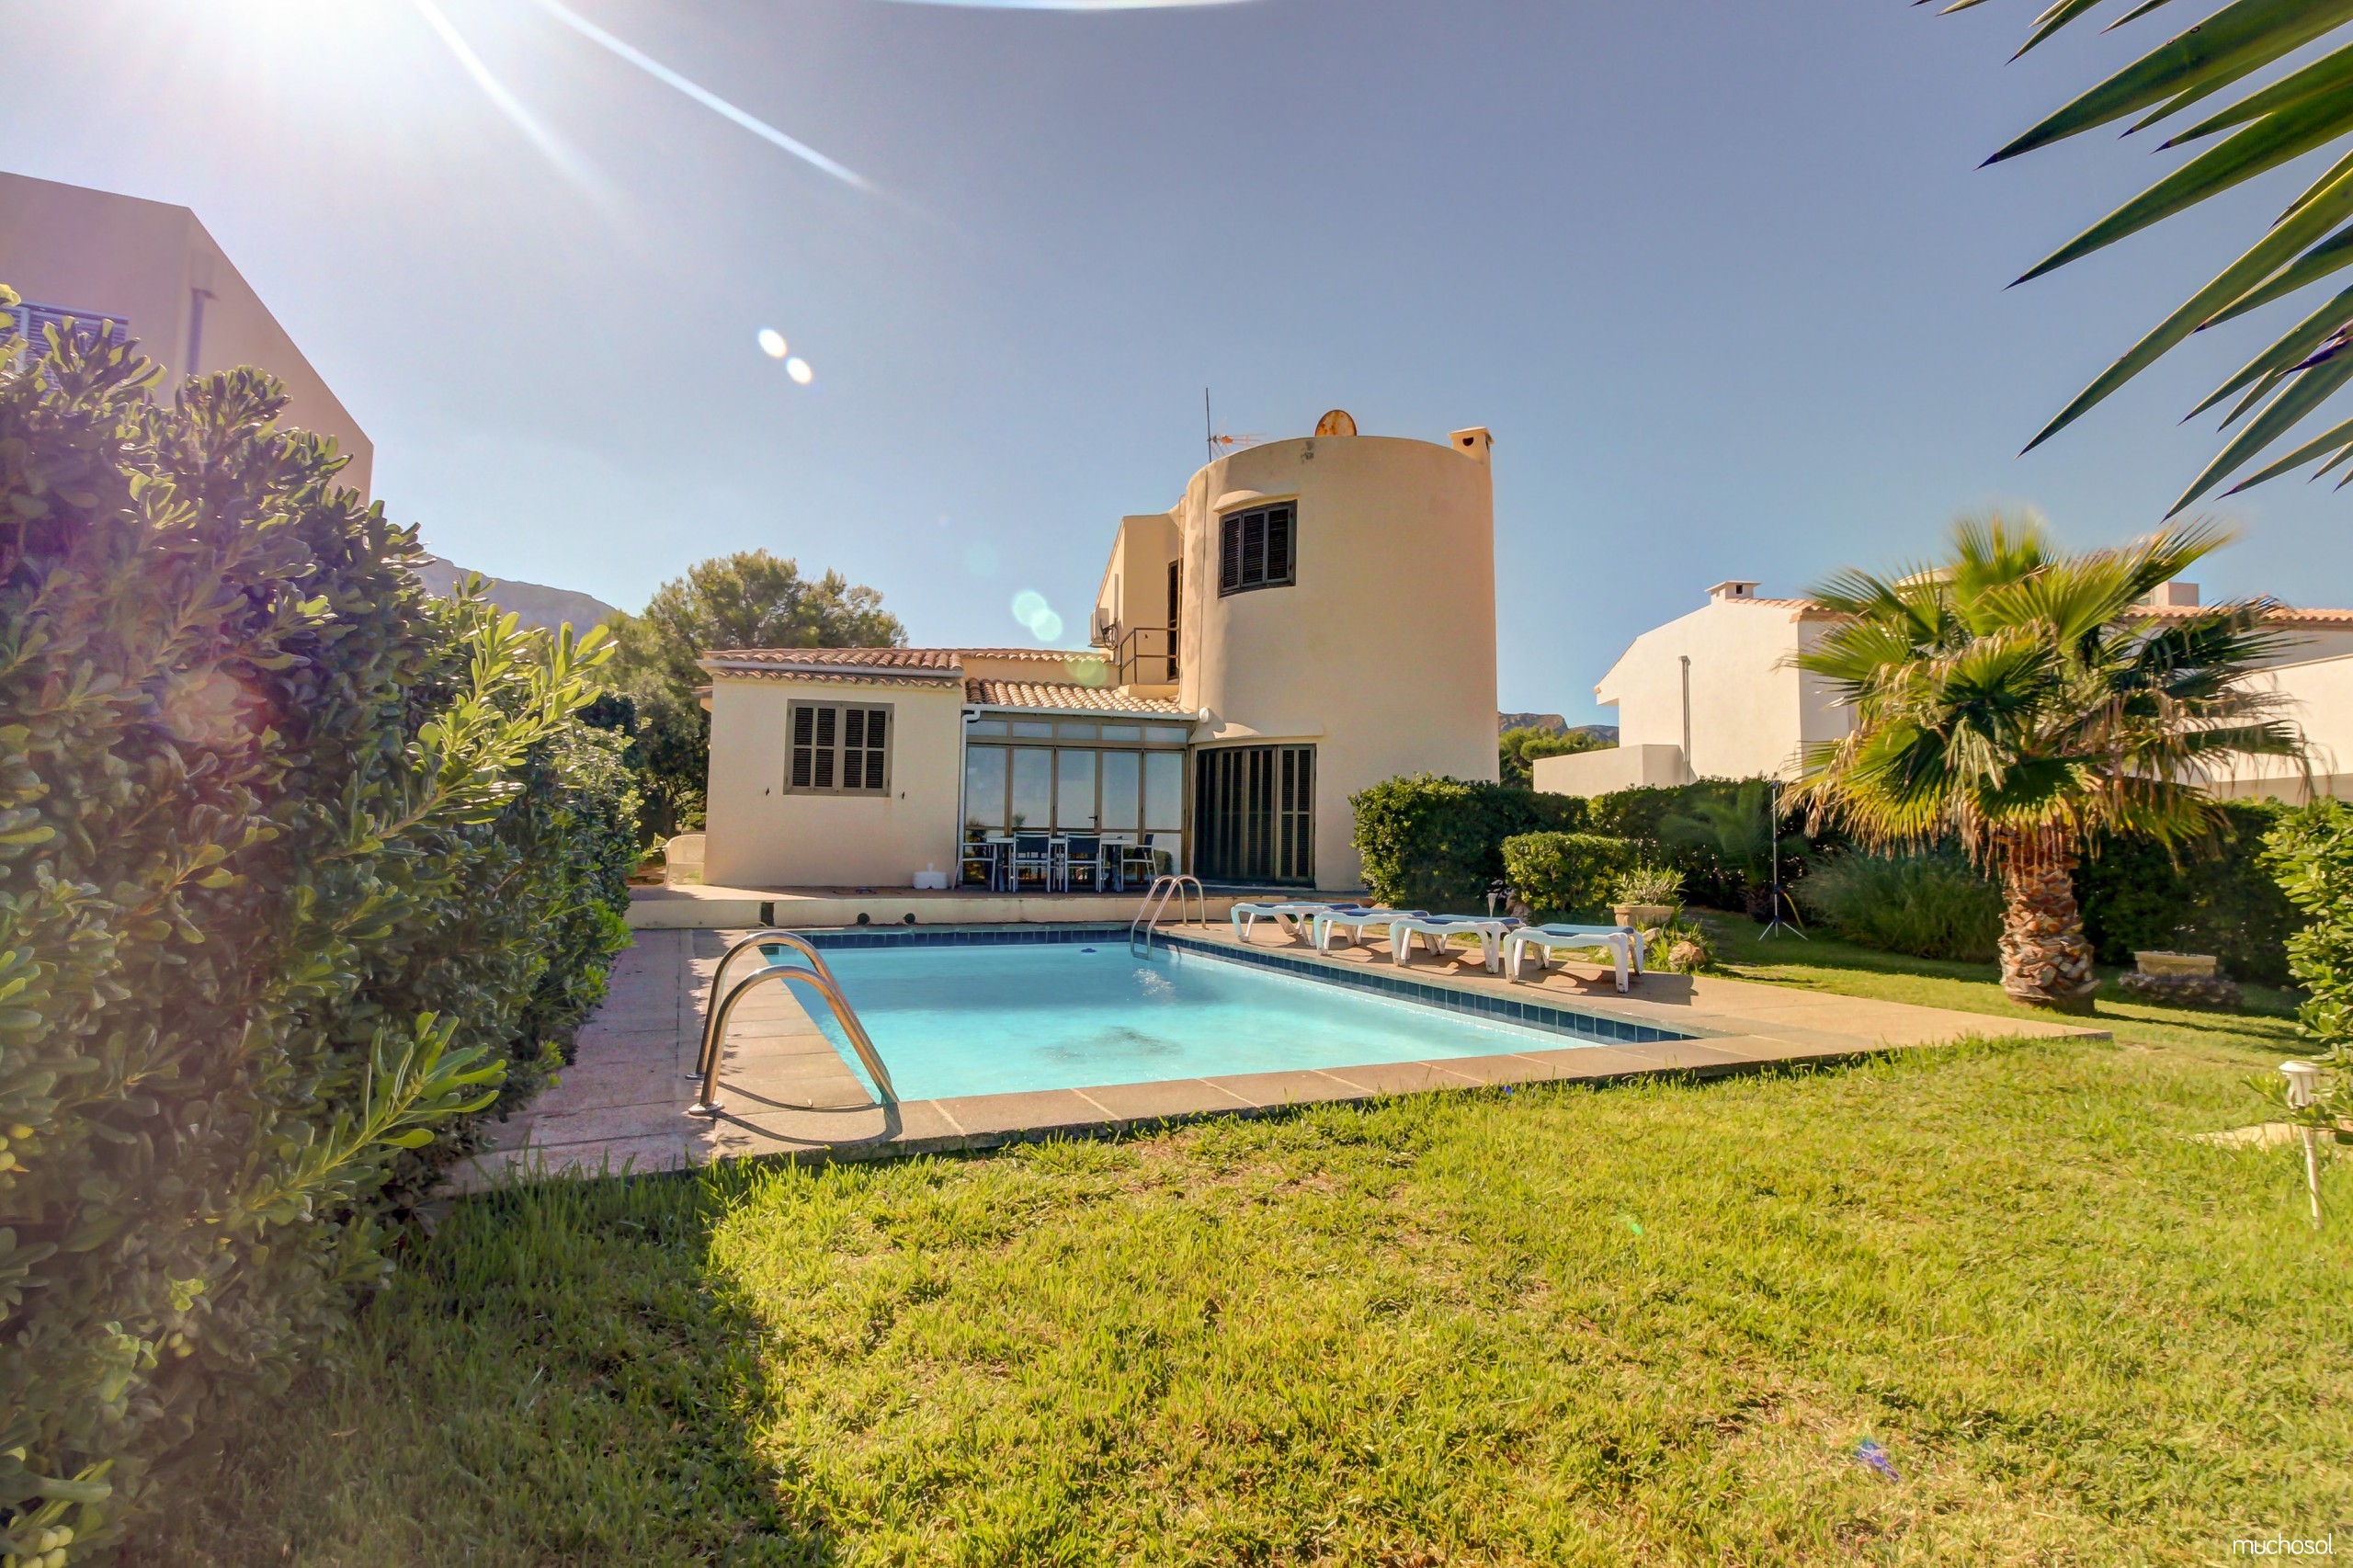 Mallorca Balear island villa rental for 7 persons private pool sea[....]